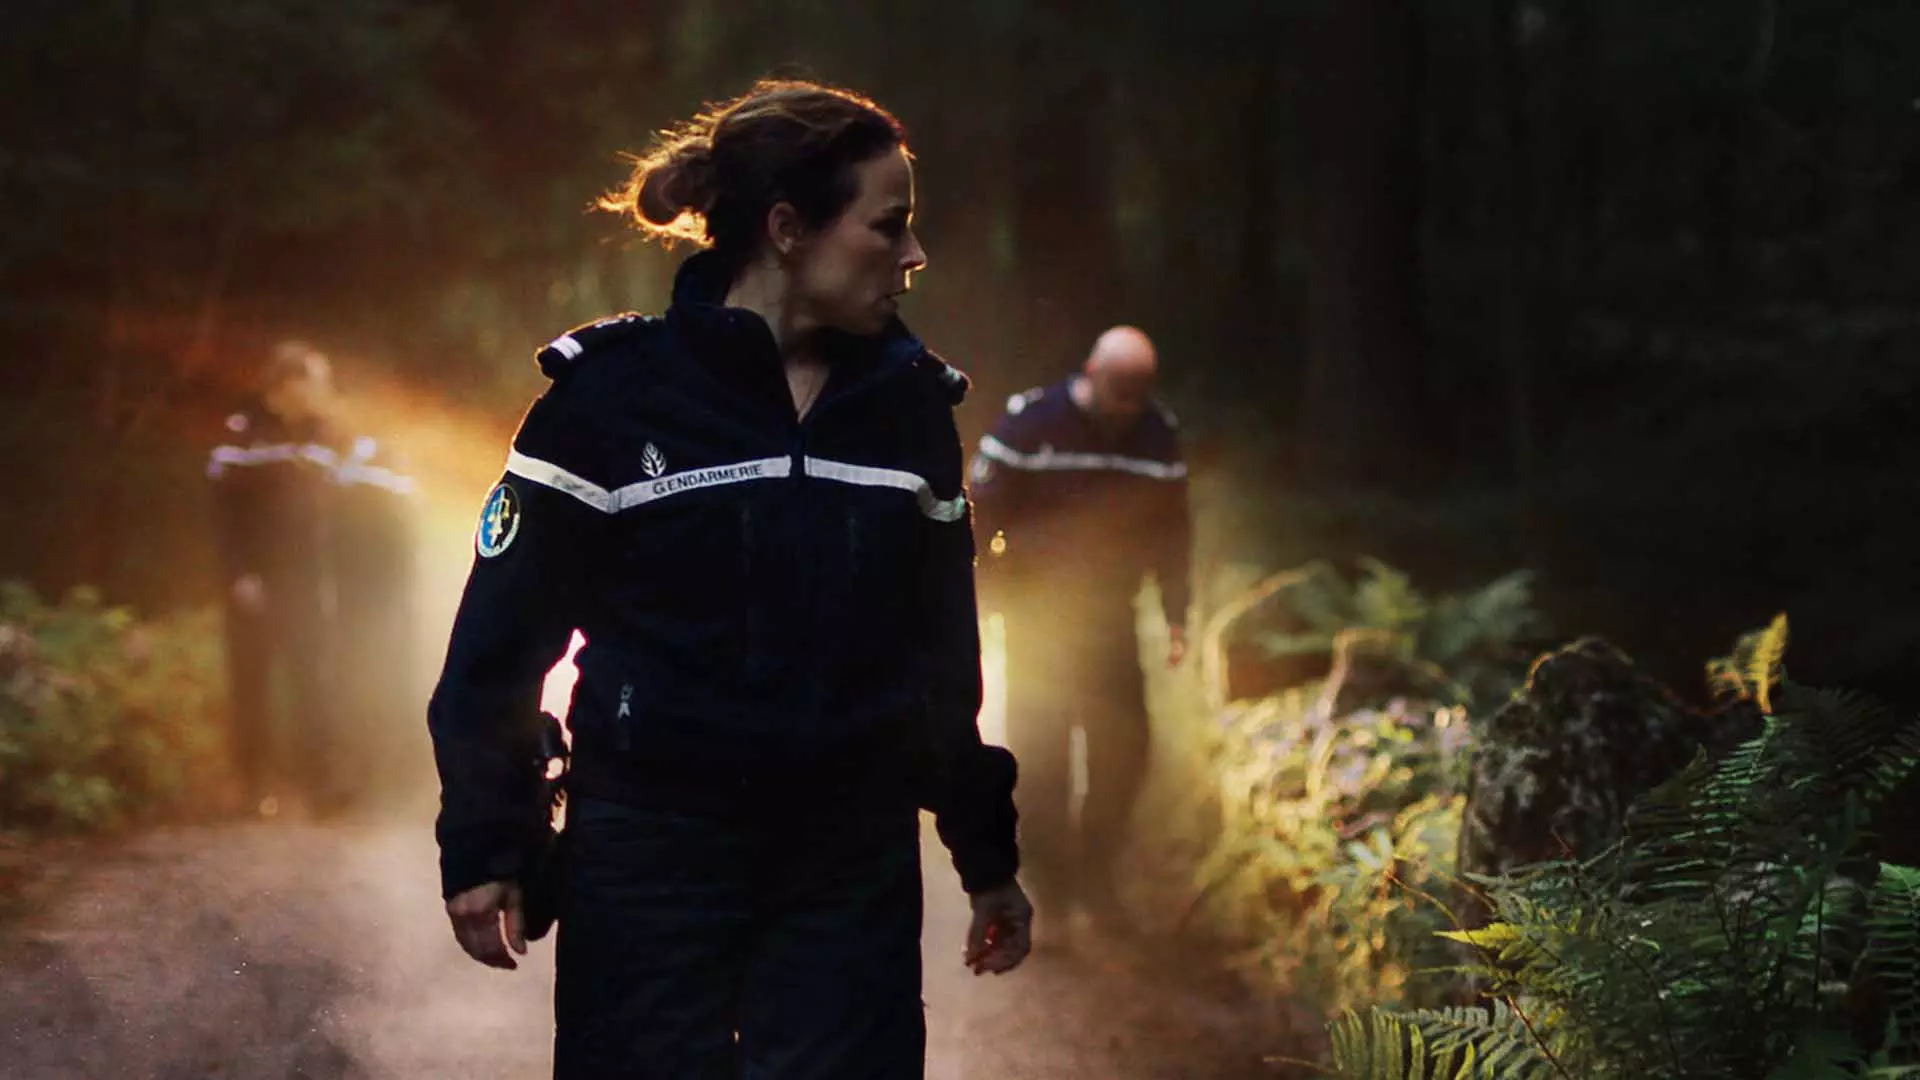 نیروهای نگهبان در سریال The Forest در جنگل در حال تجسس هستند